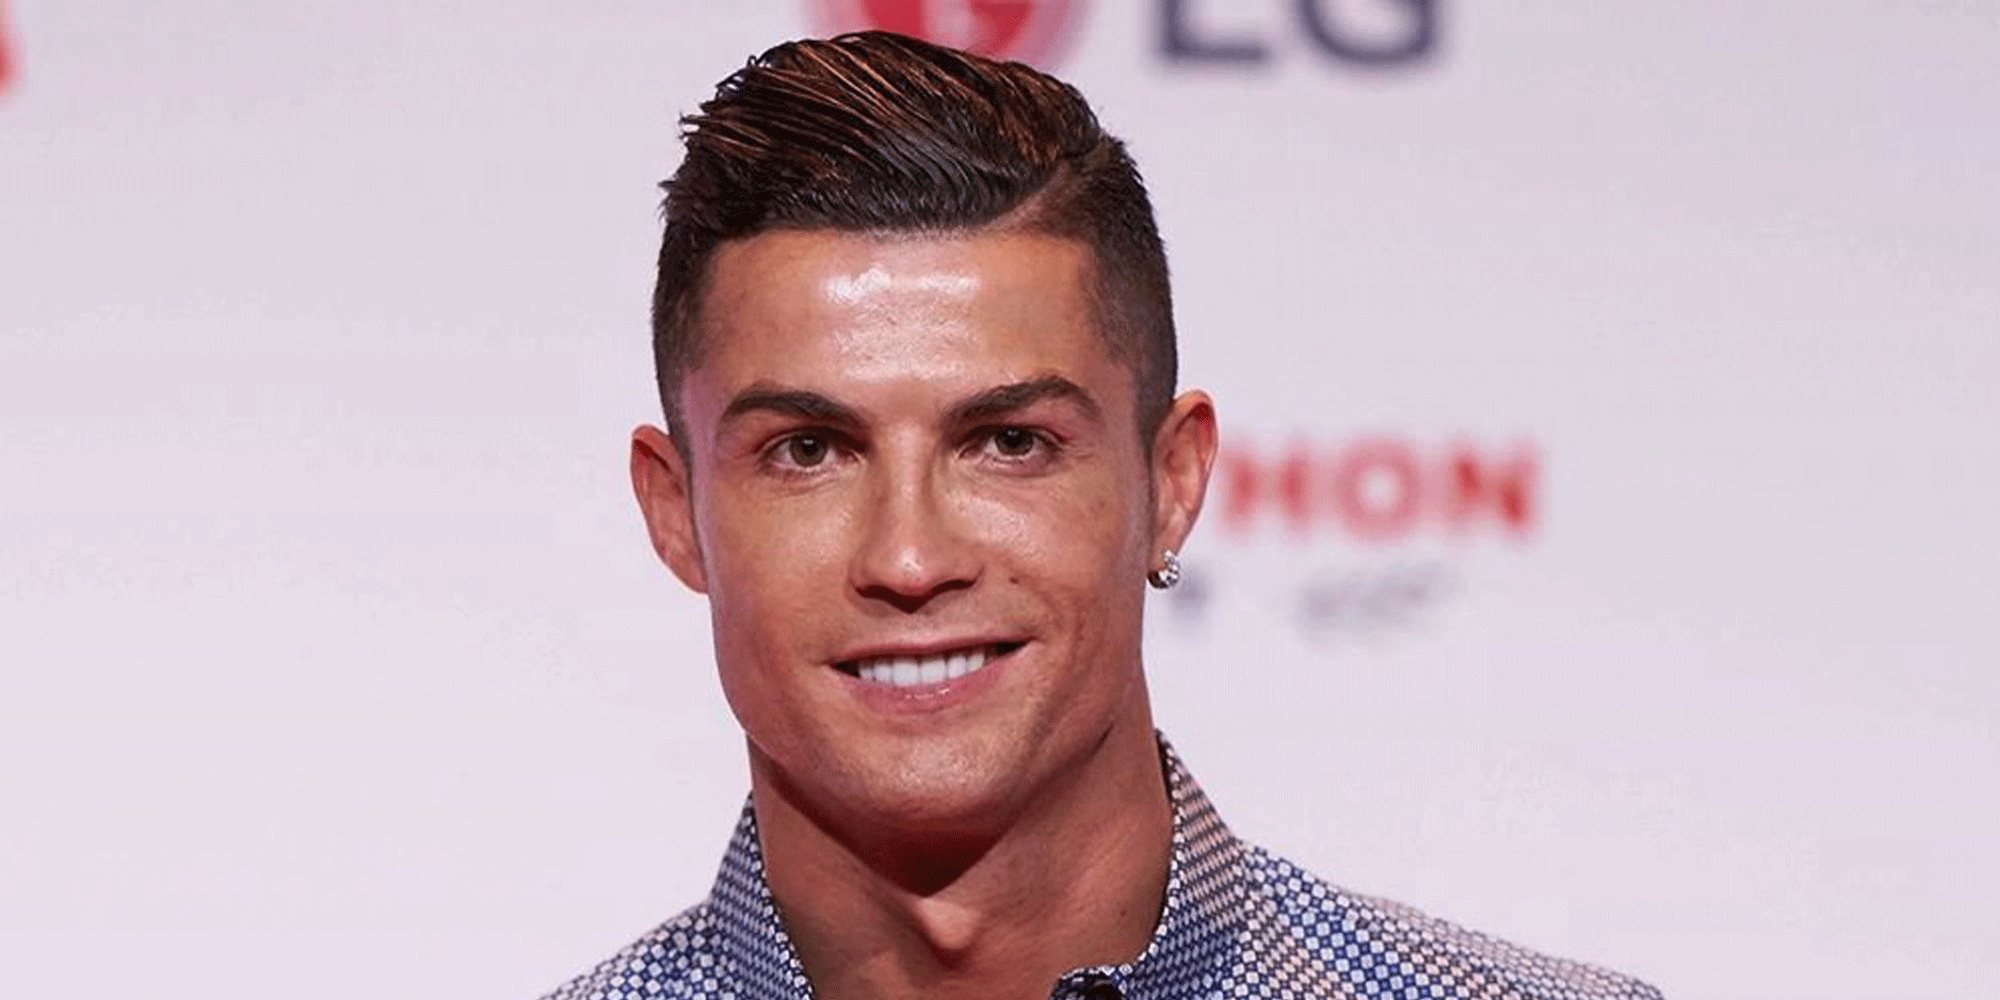 Cristiano Ronaldo, obligado a pasar la cuarentena del coronavirus en Portugal porque no puede volver a Italia